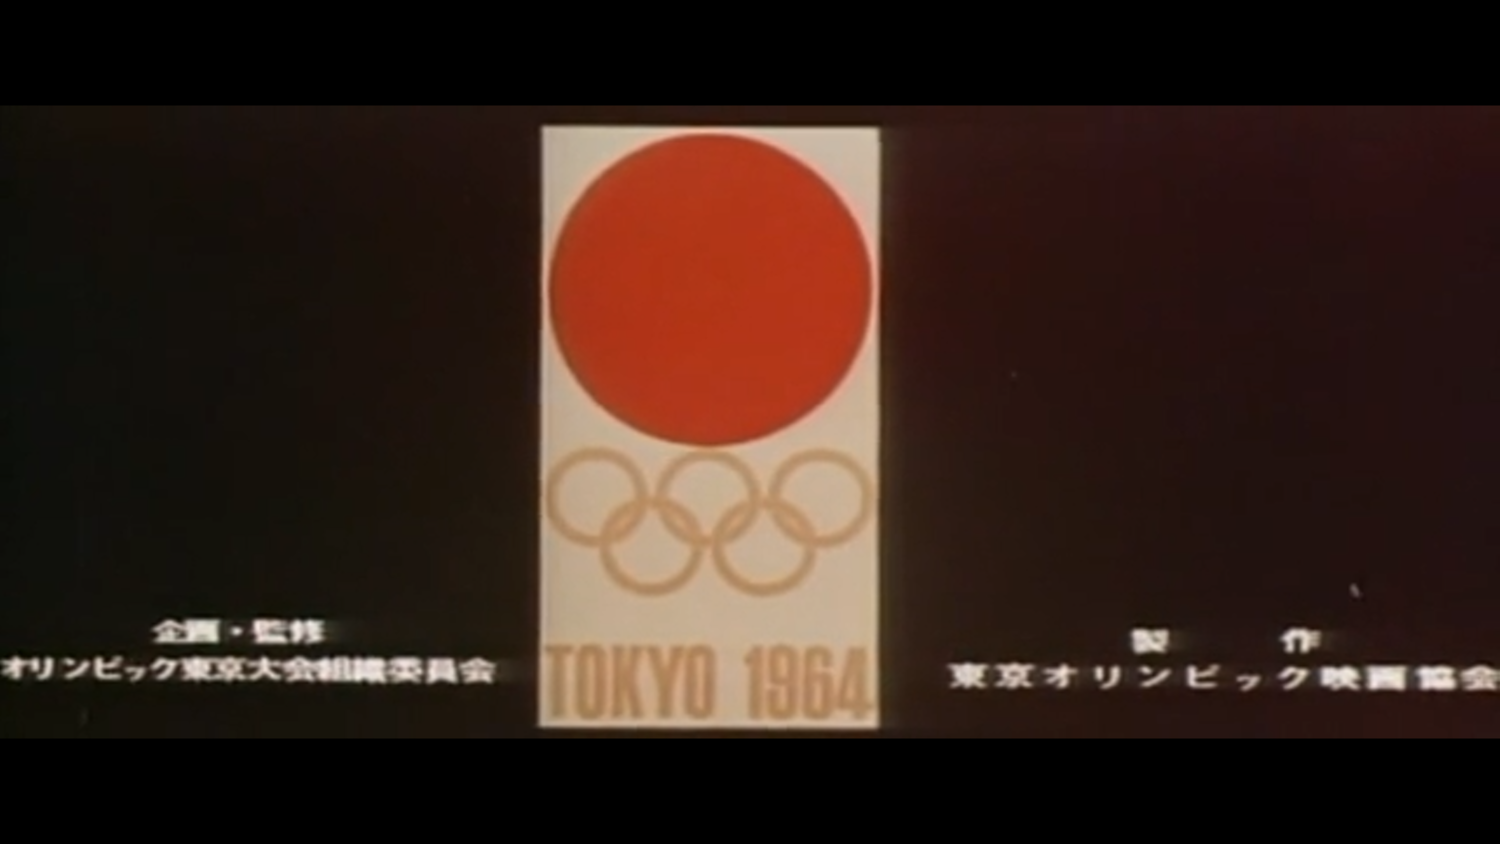 История Летних Олимпийских игр 1964. Токио